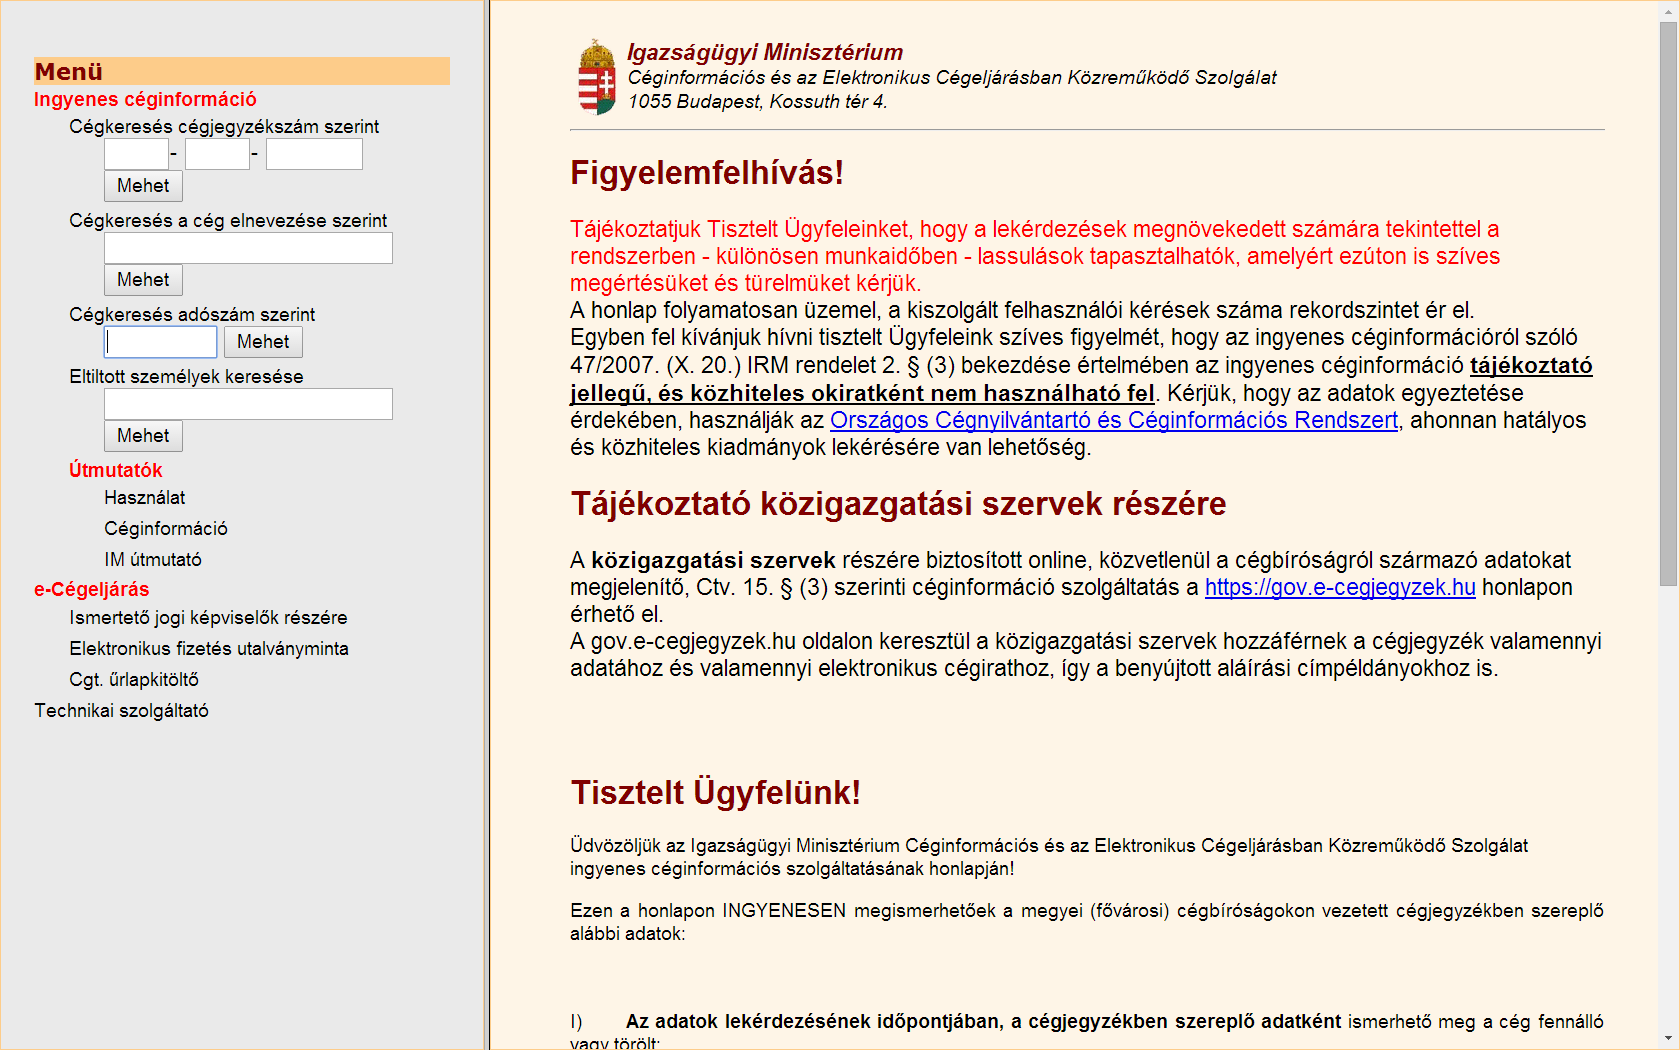 10 Céginformáció az e-cegjegyzek.hu oldalon keresztül A Céginformációs Szolgálat az alábbi honlapon keresztül biztosítja az ingyenes elektronikus céginformáció szolgáltatást: http://www.e-cegjegyzek.hu Jogszabályi háttér: - 2006.